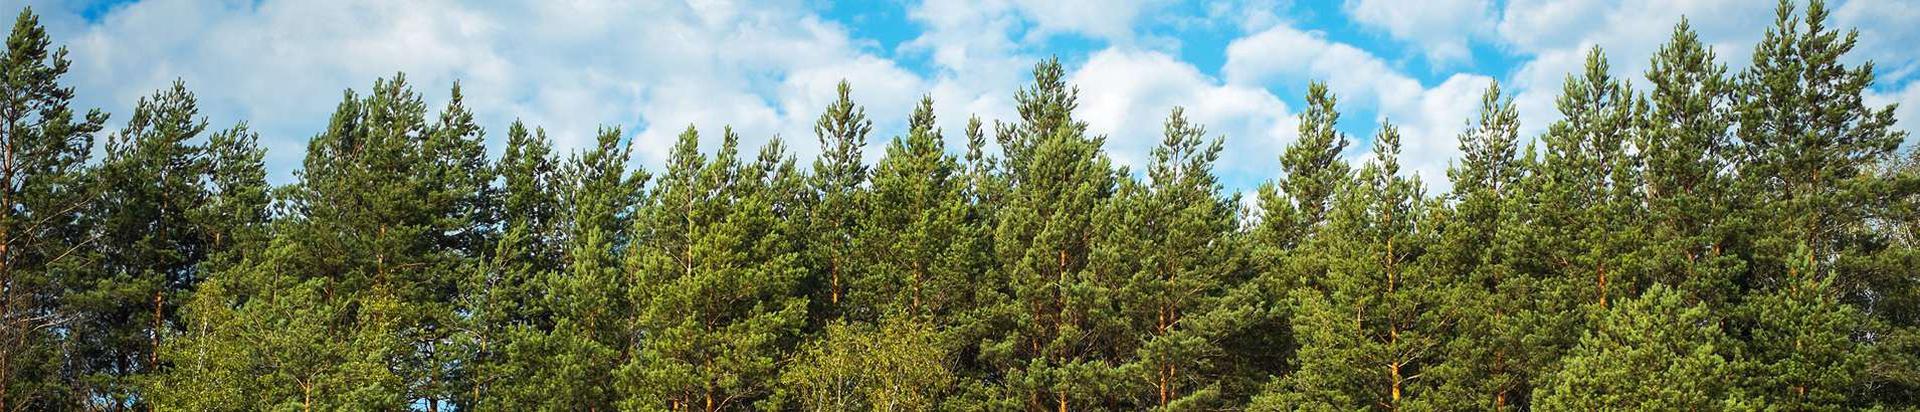 Suurim mainega ettevõte M & M METS TRADE OÜ, maineskoor 1370, aktiivseid äriseoseid 1. Tegutseb peamiselt valdkonnas: Metsamajanduse abitegevused.